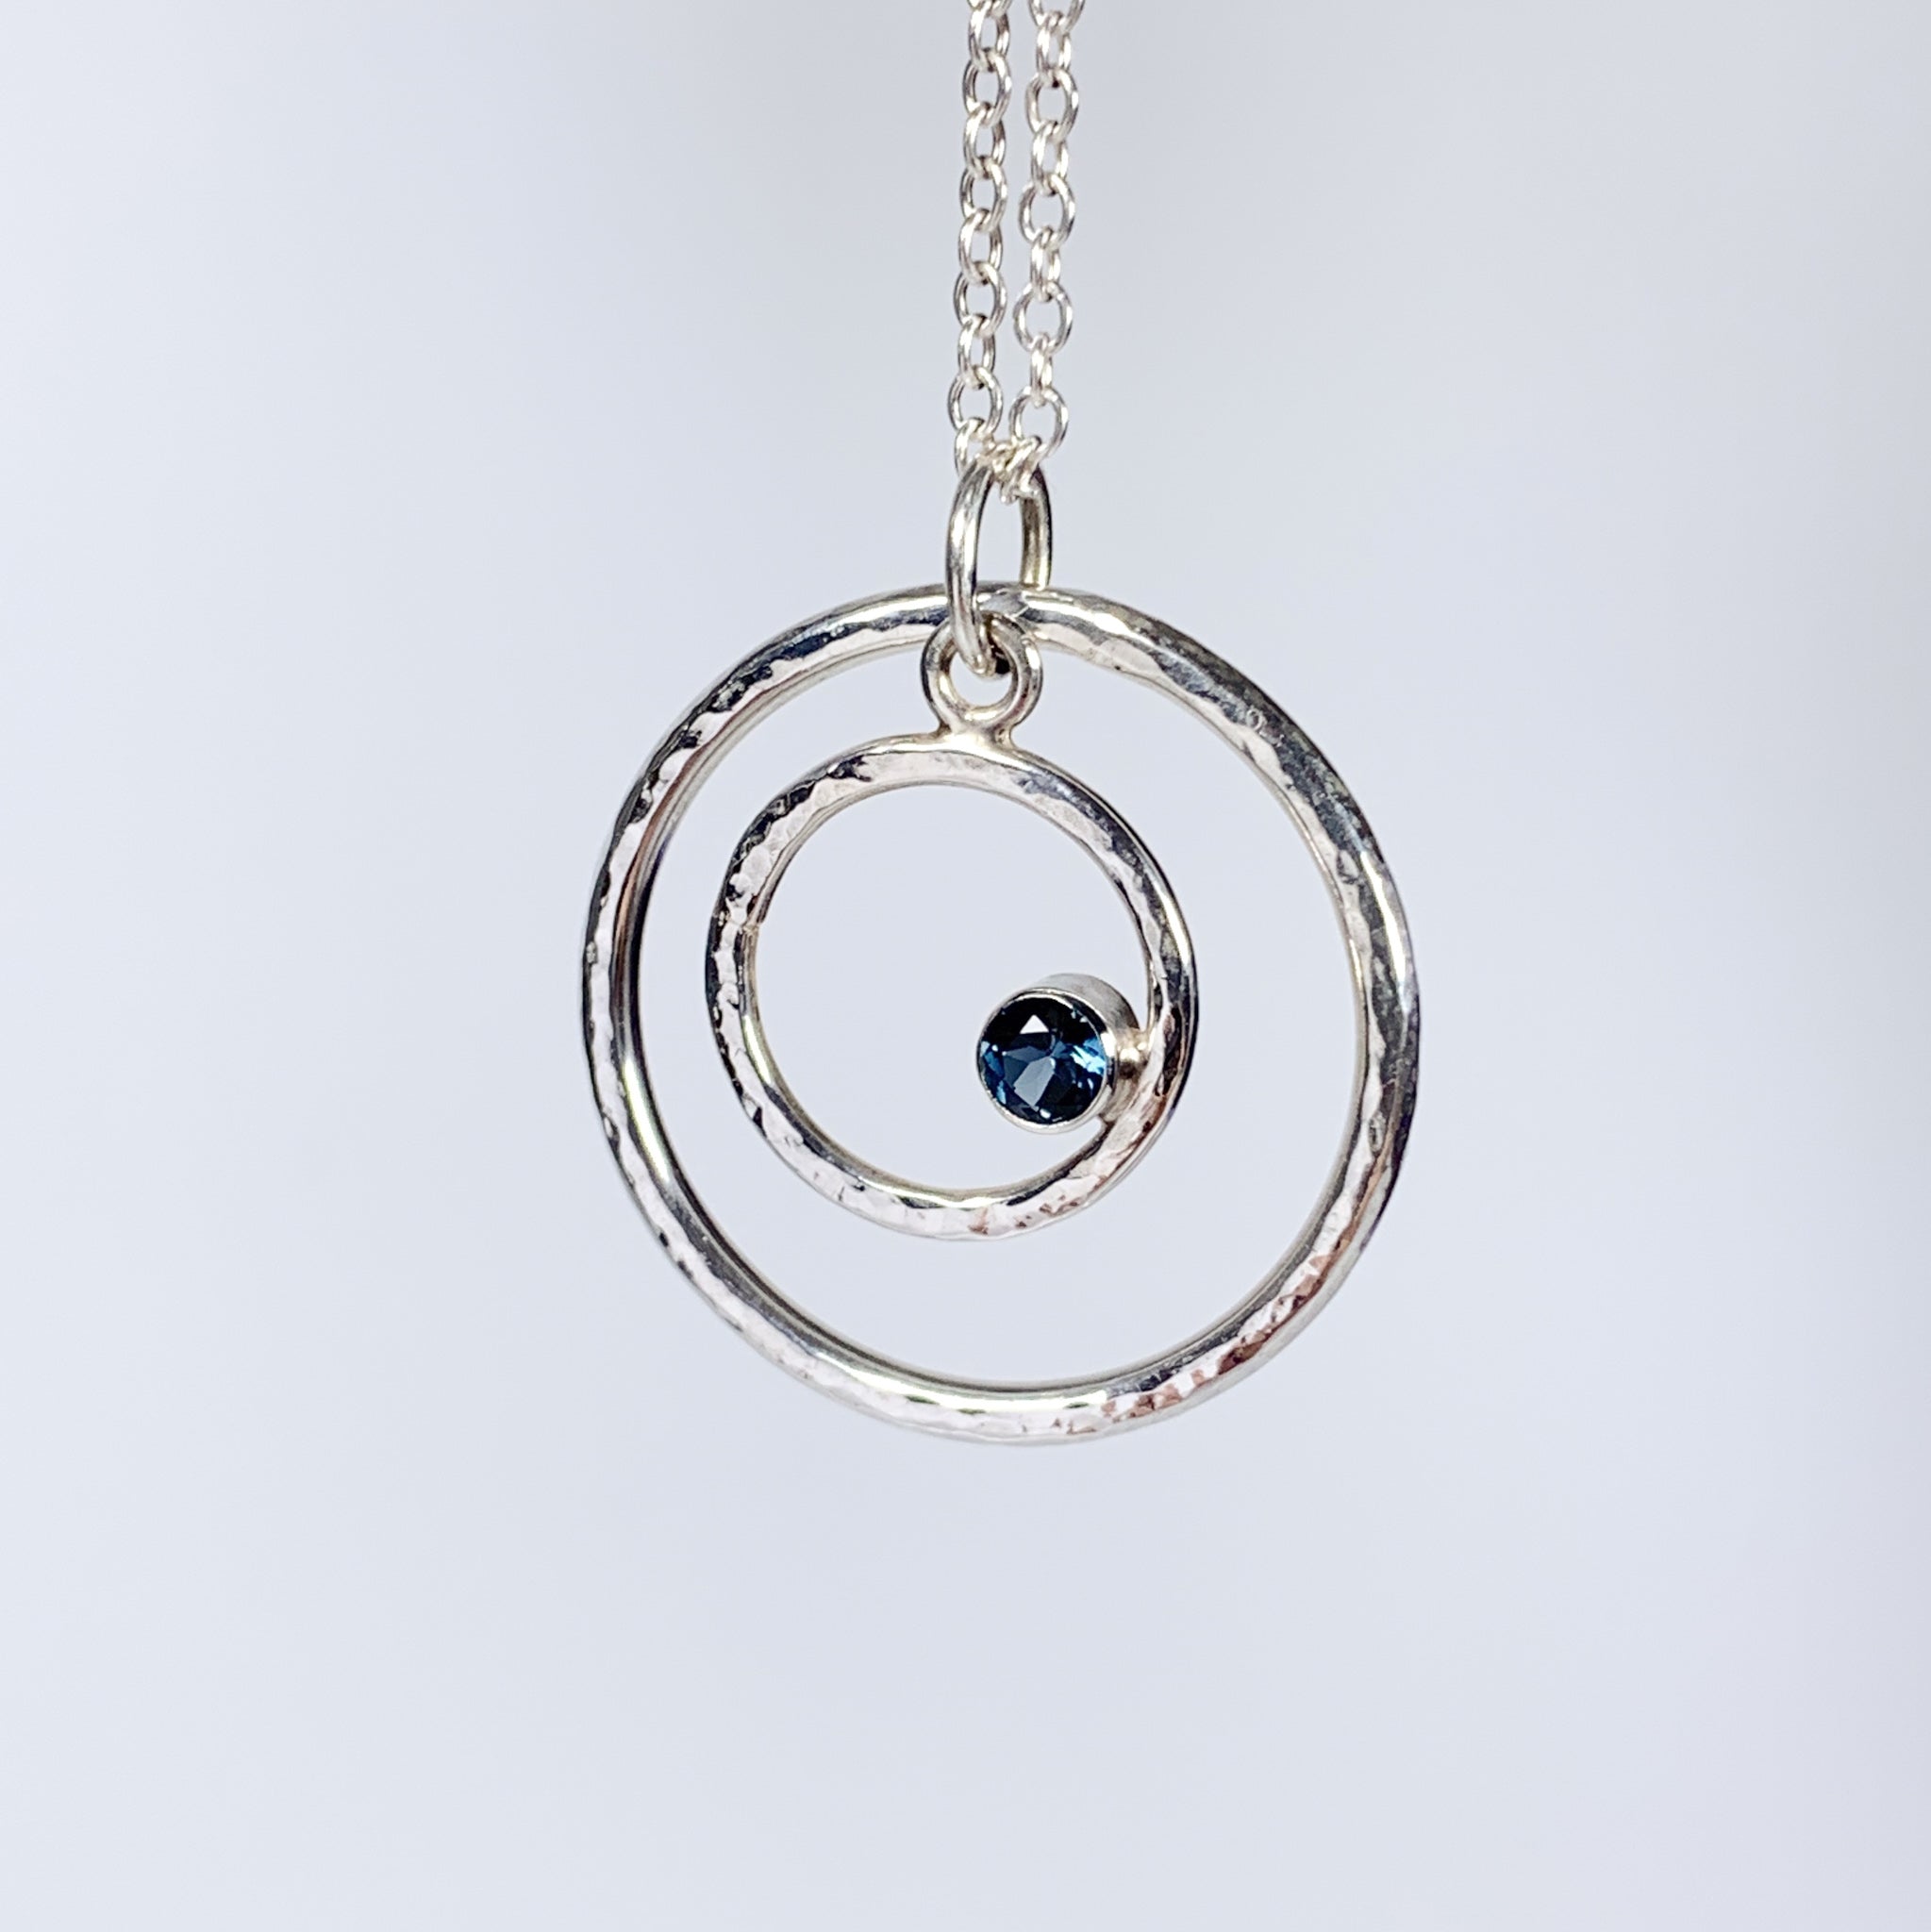 Caldera Eclissi Doppia London Blue Topaz Silver Pendant Necklace